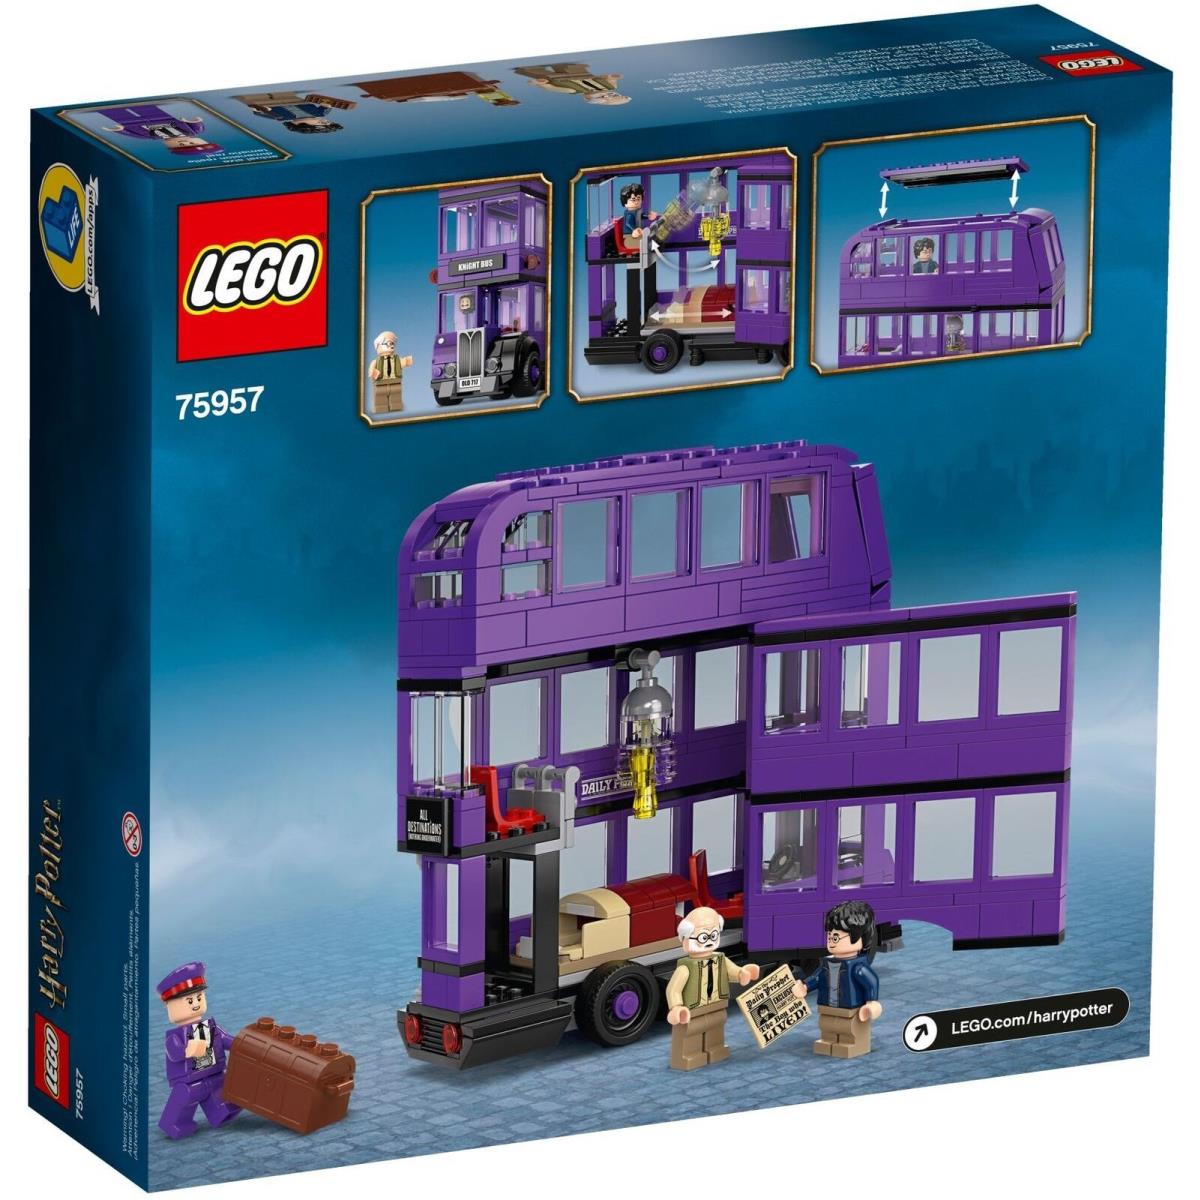 Lego Harry Potter 75957 The Knight Bus Triple Decker Purple